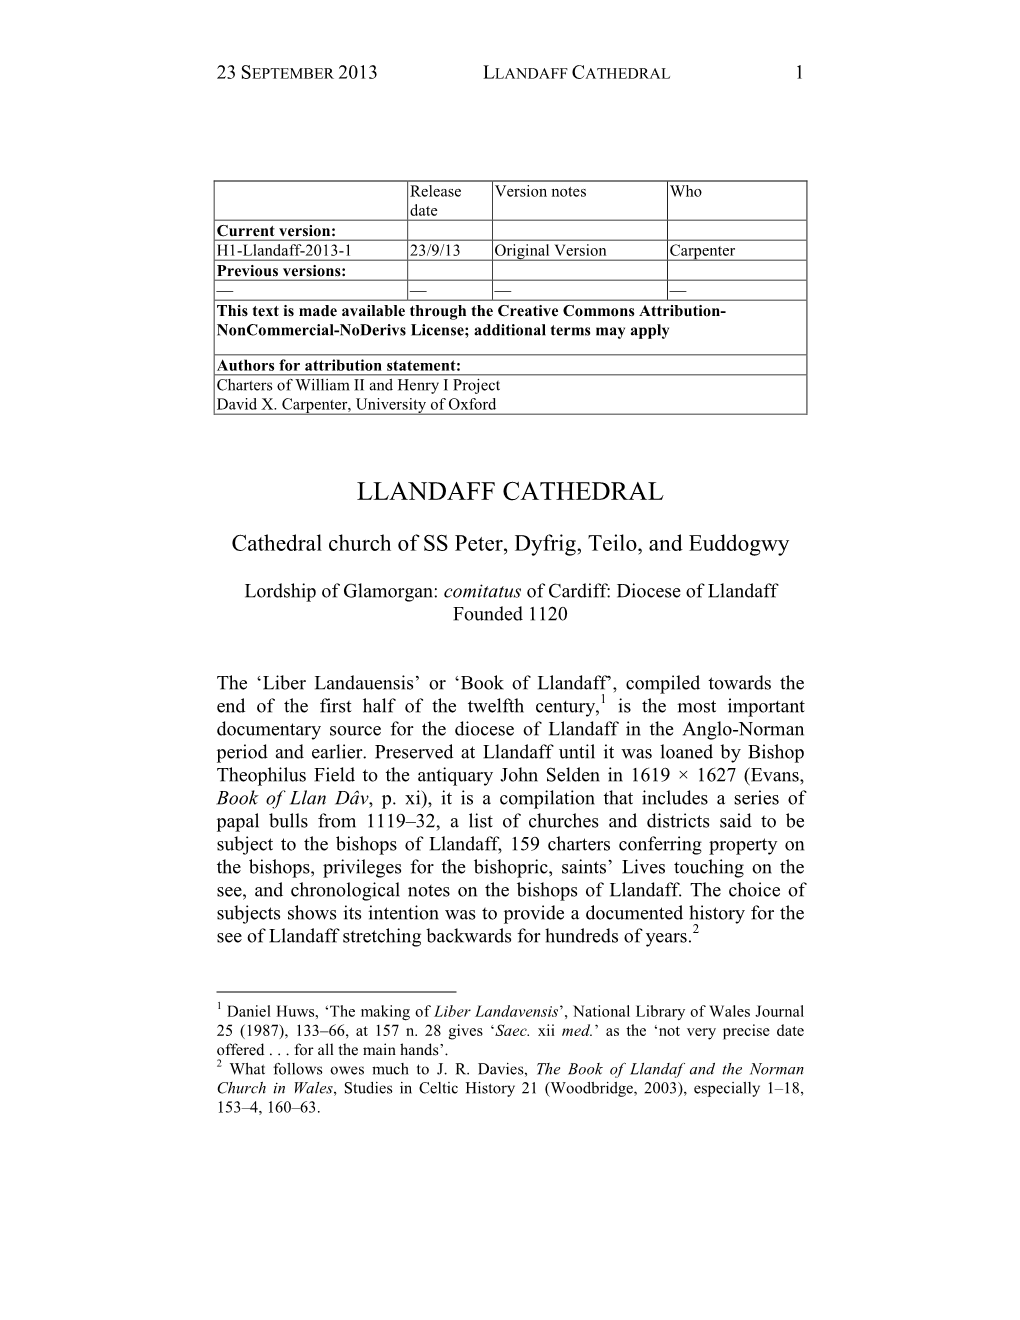 Llandaff Cathedral 1